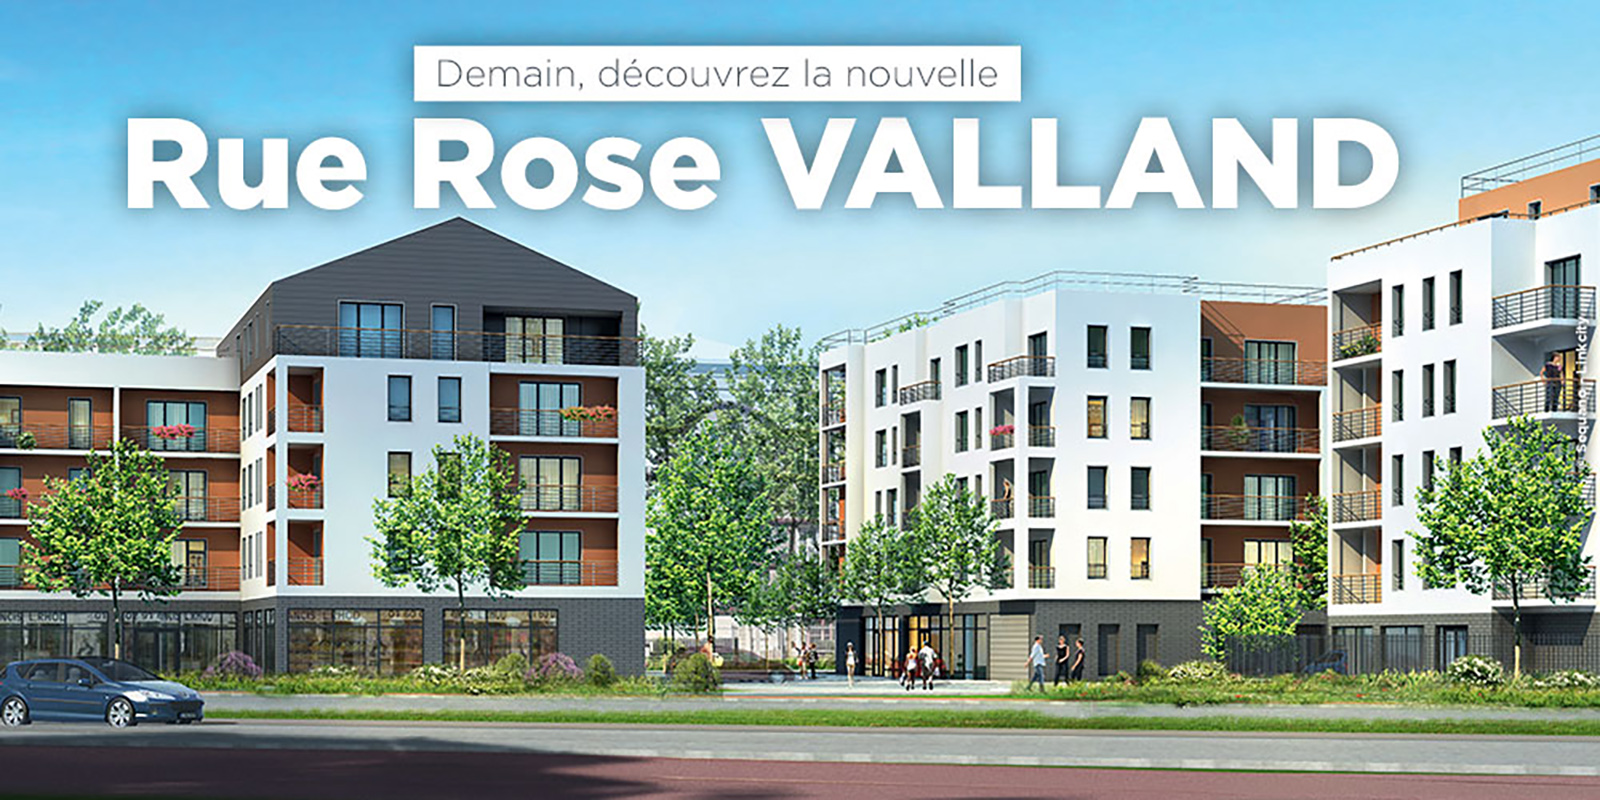 Rue Rose Vailland Dénomination